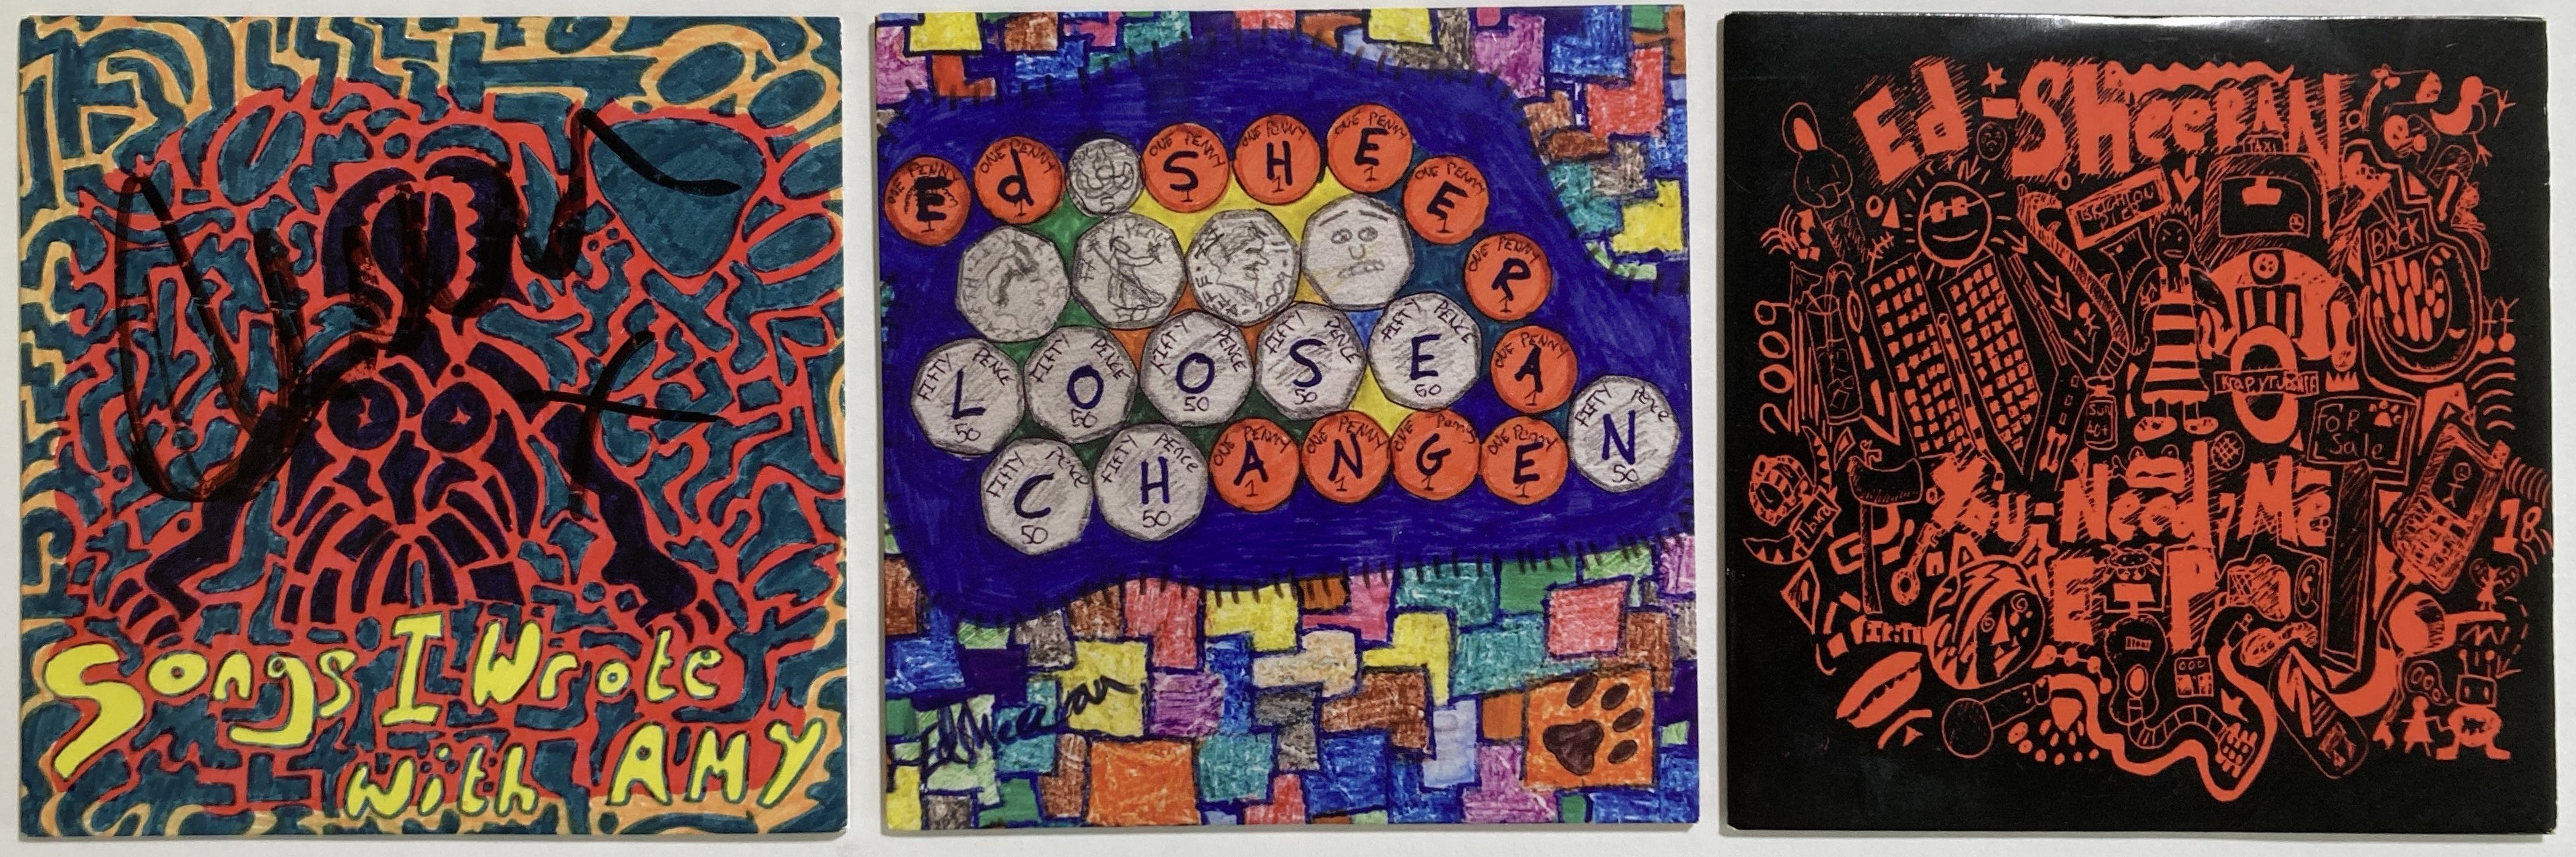 ed sheeran loose change album cover